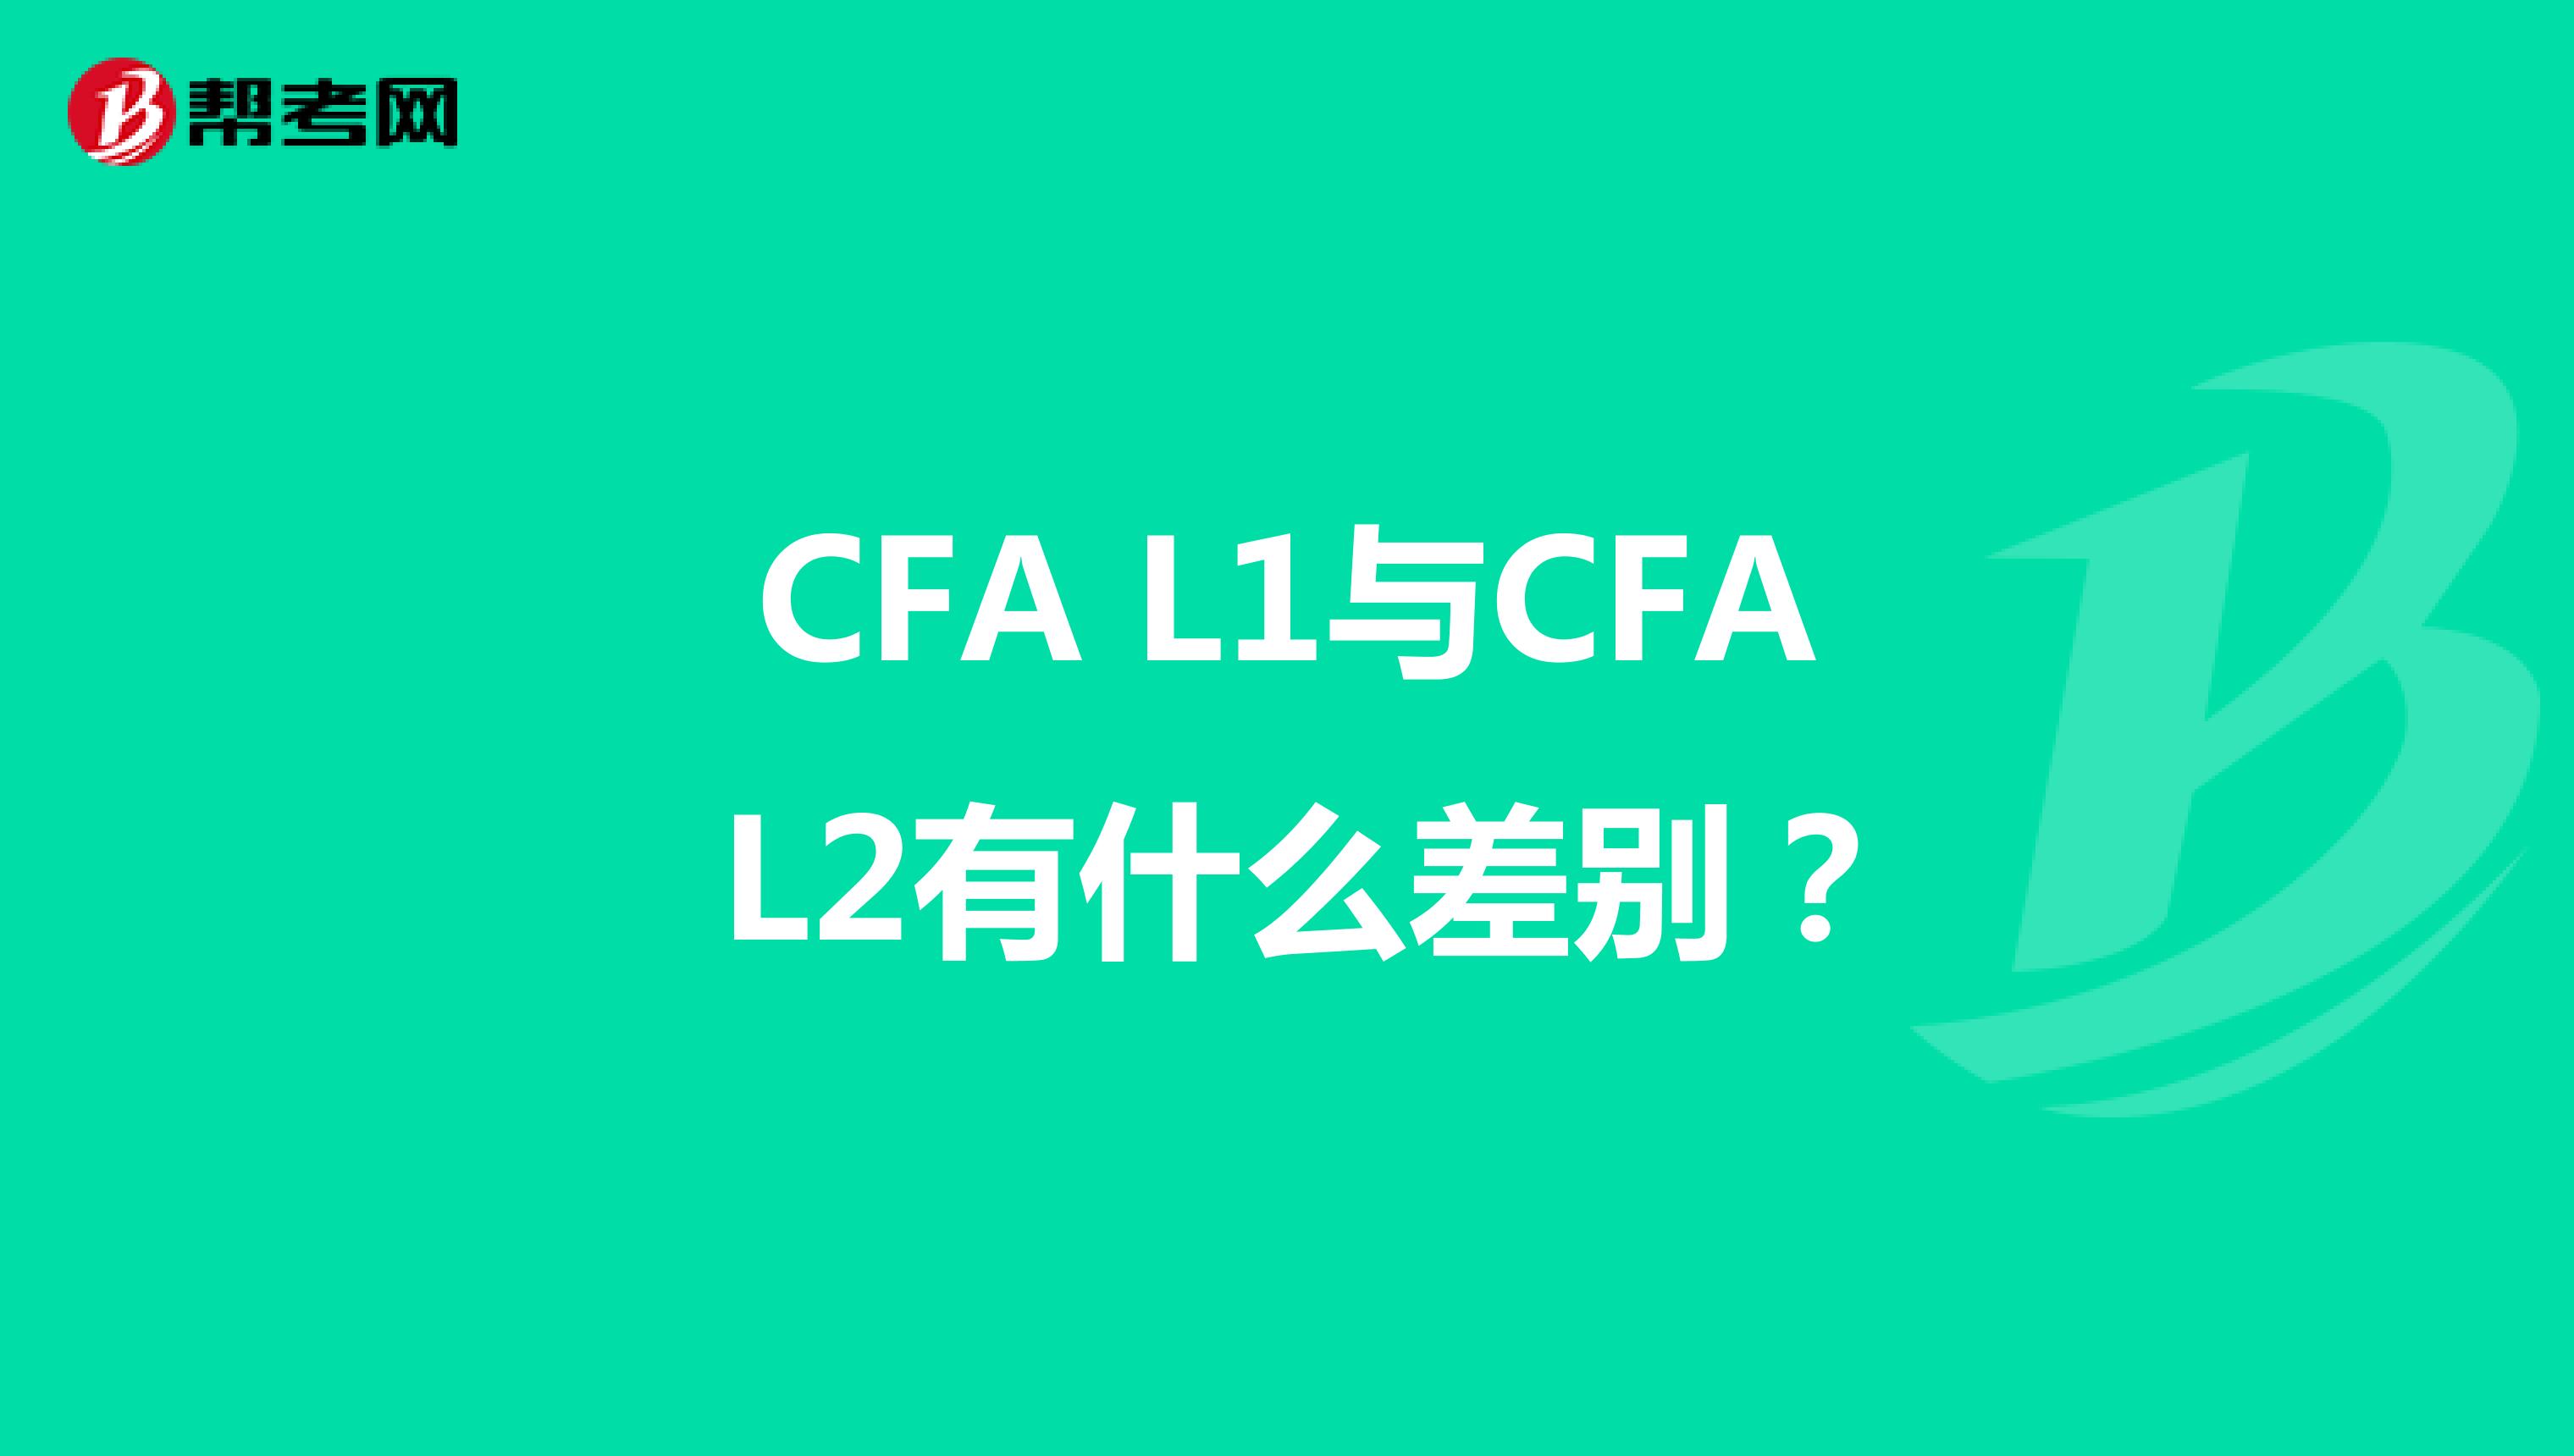 CFA L1与CFA L2有什么差别？